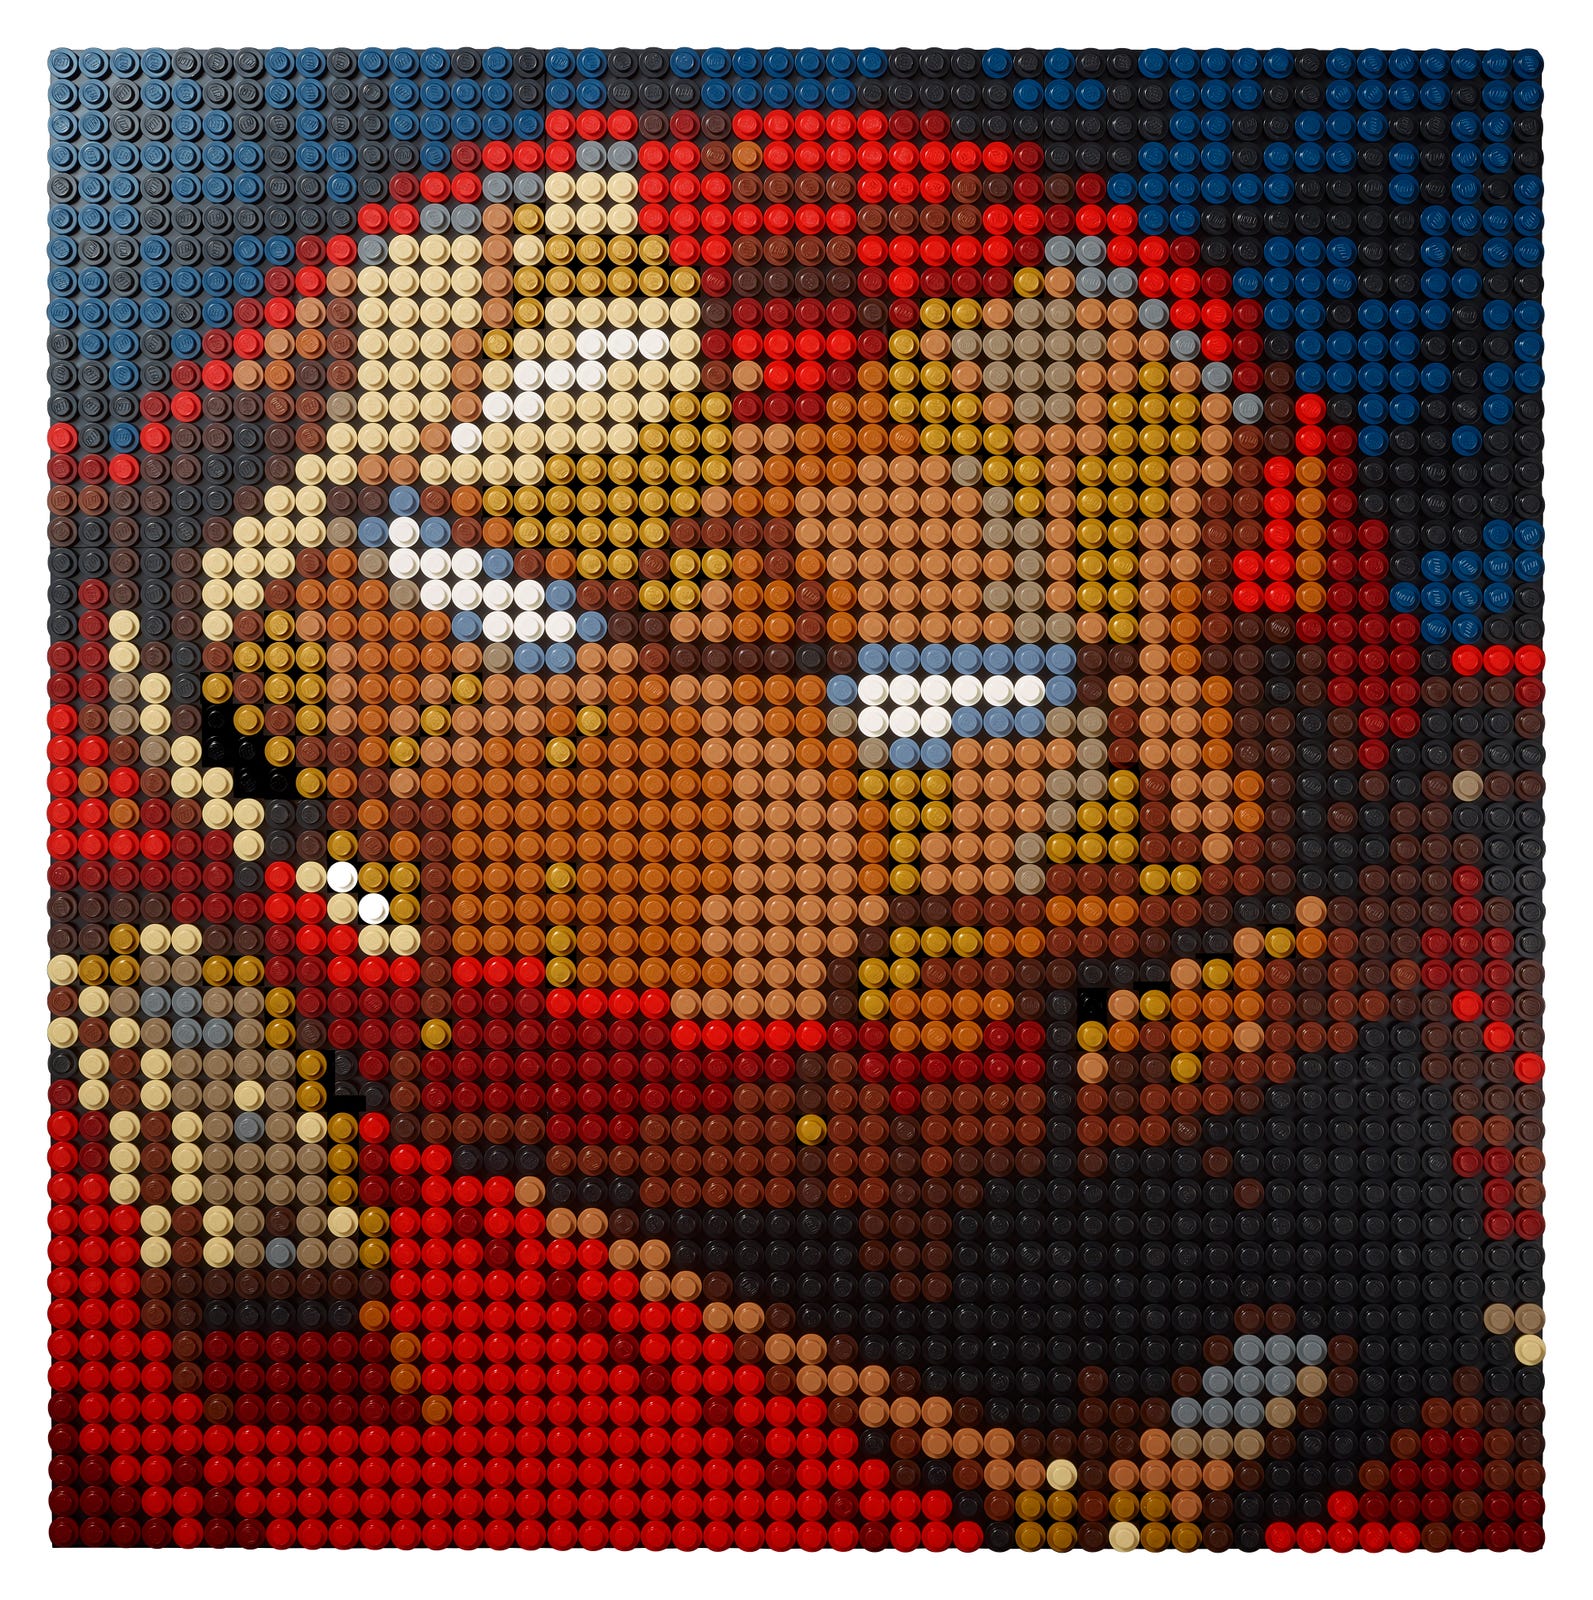 Lego Art Marvel Studios Iron Man Art 31199